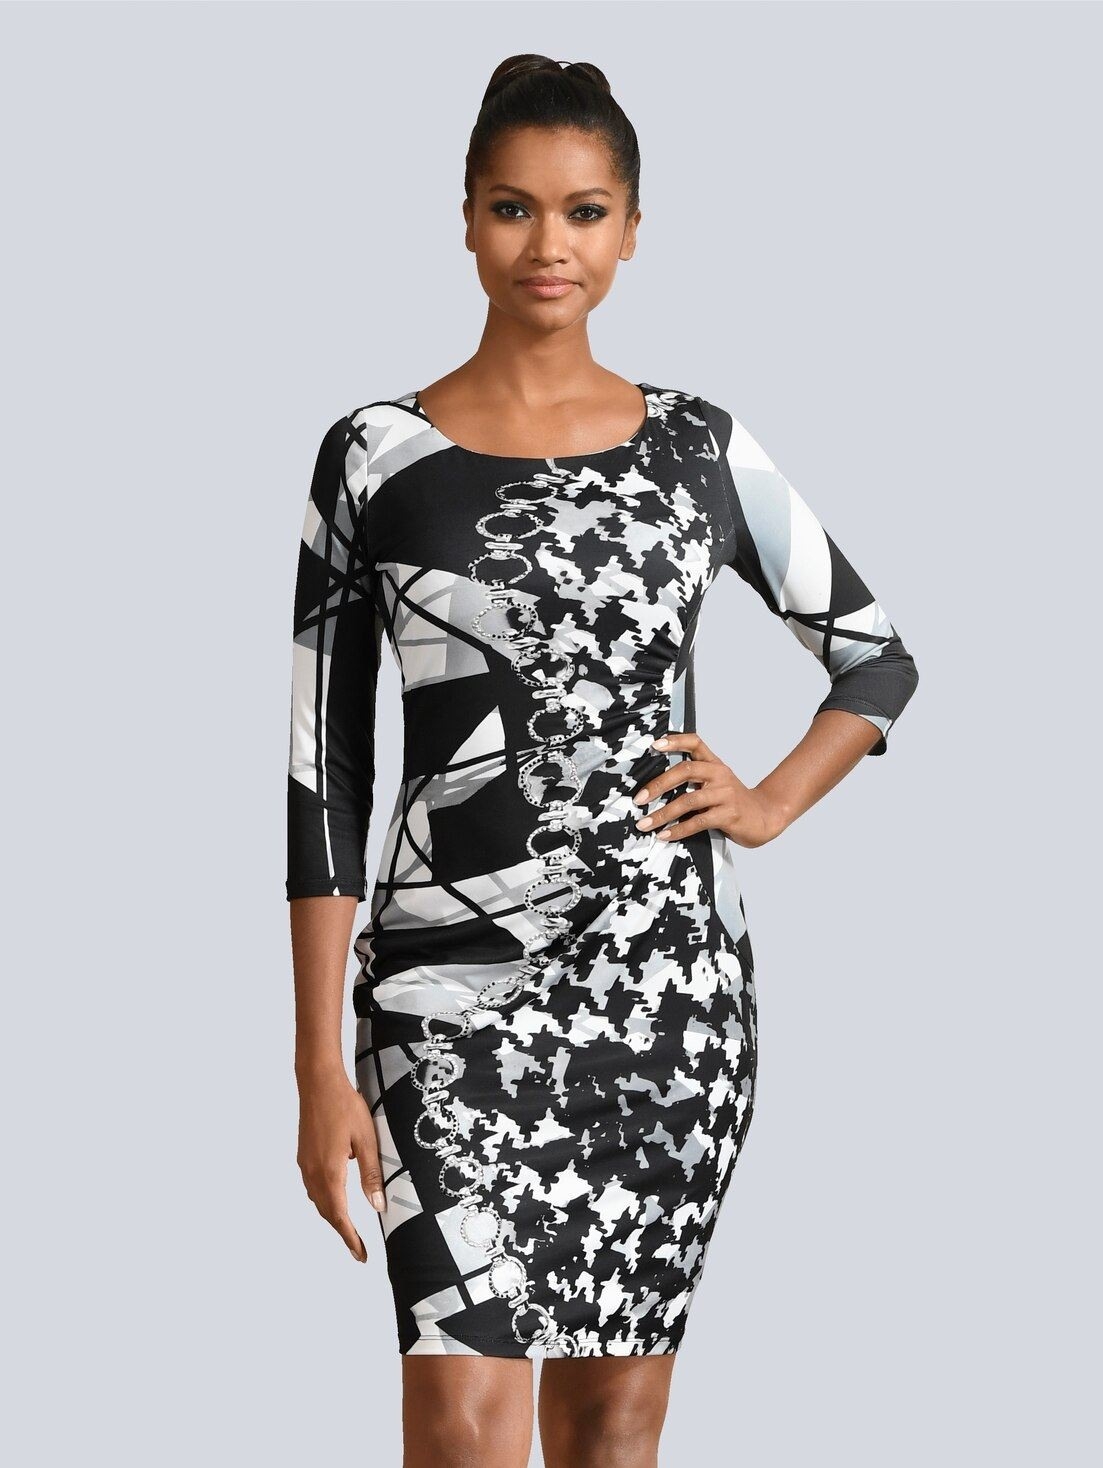 Einzigartig Kleid Grau Stylish20 Einfach Kleid Grau Design